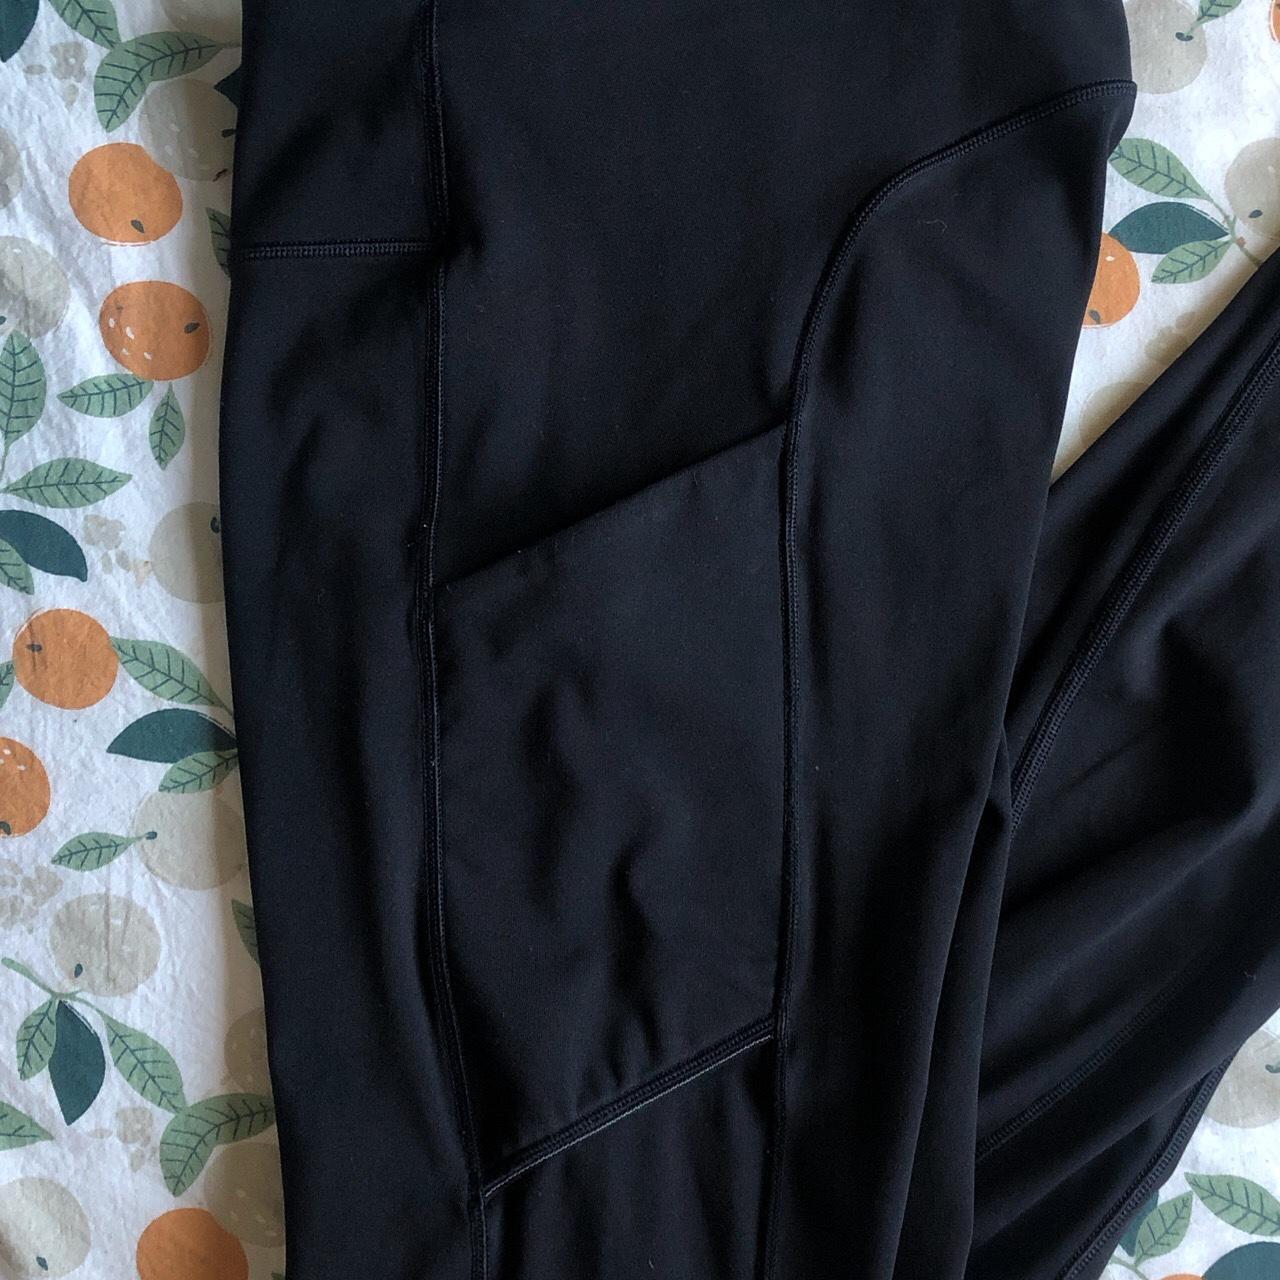 Lululemon black leggings (with pockets✨), size 4